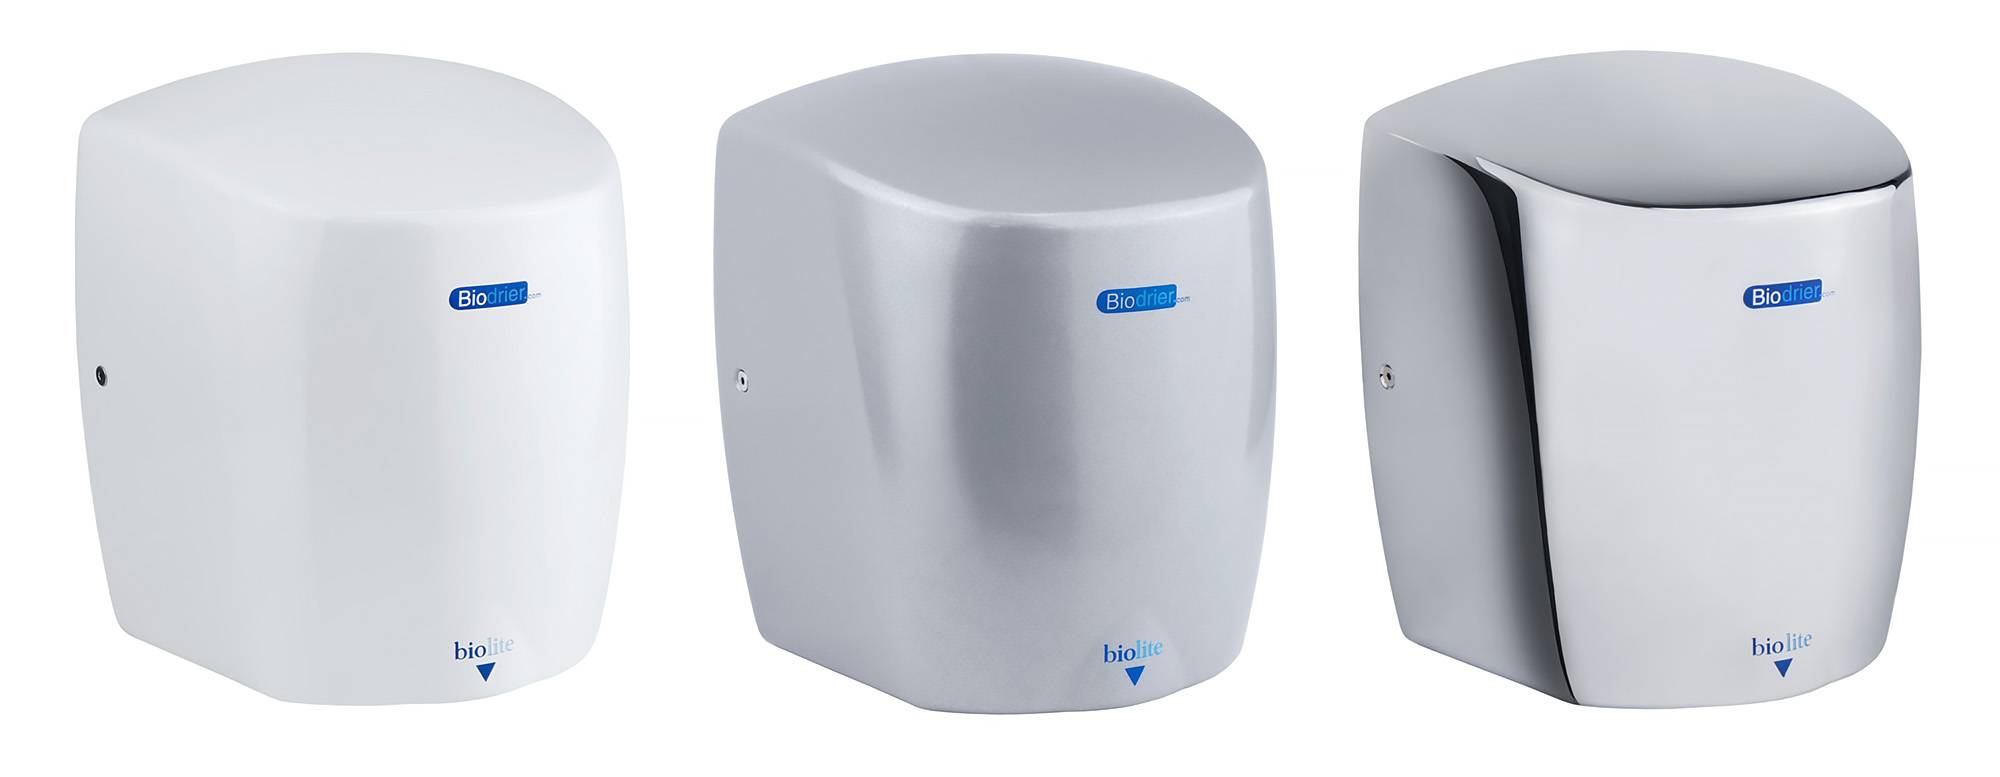 Biodrier Biolite Hand Dryer - Compact Jet Hand Dryer